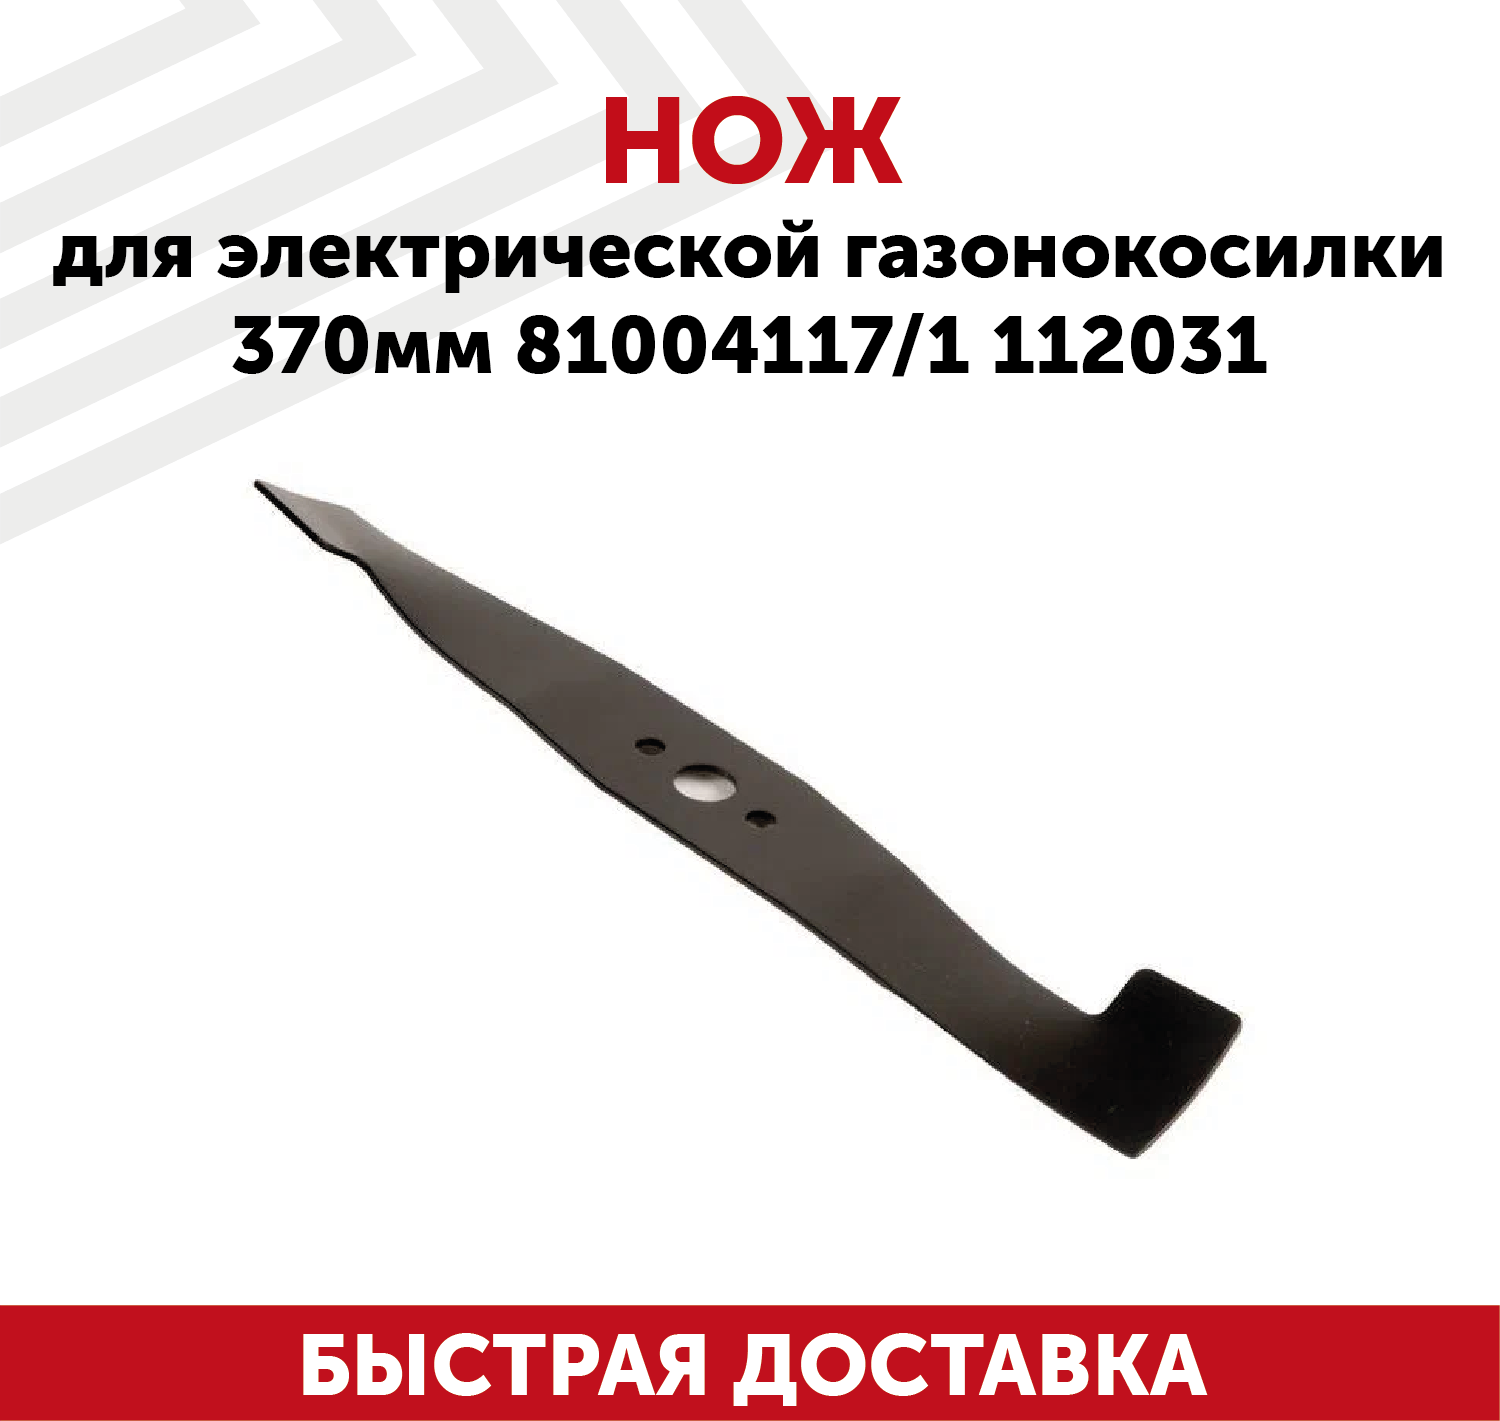 Нож для электрической газонокосилки 81004117 1112031 (37)